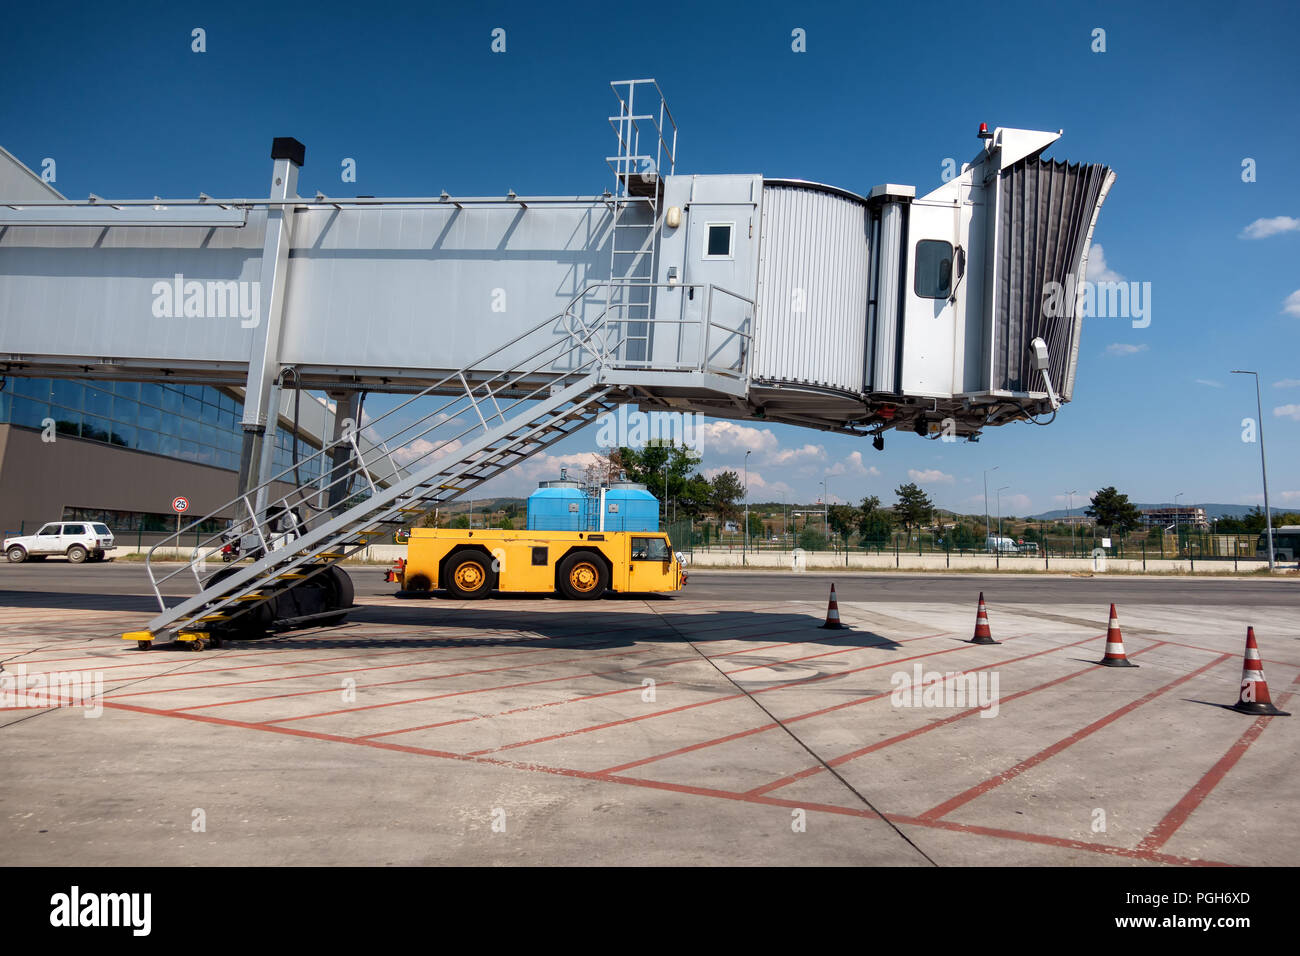 Jet bridge, boarding bridge on airport with yellow tow tractor beneath Stock Photo